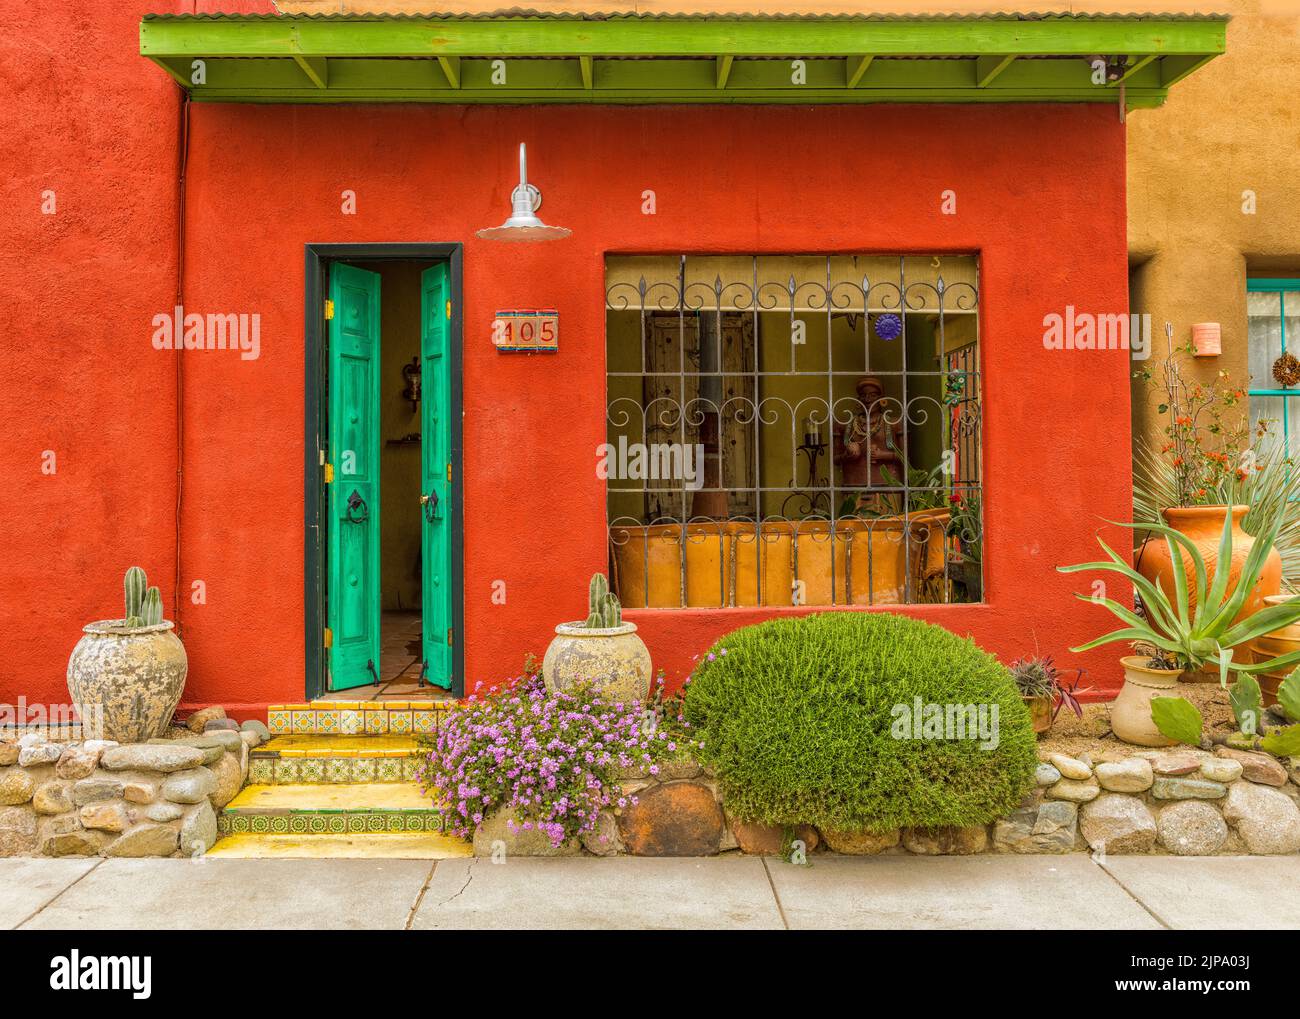 Bunte Wände und Fenster Adobe Stryle, Altstadt, Künstlerviertel, Adobe Walls Tucson, Arizona, USA, USA Stockfoto